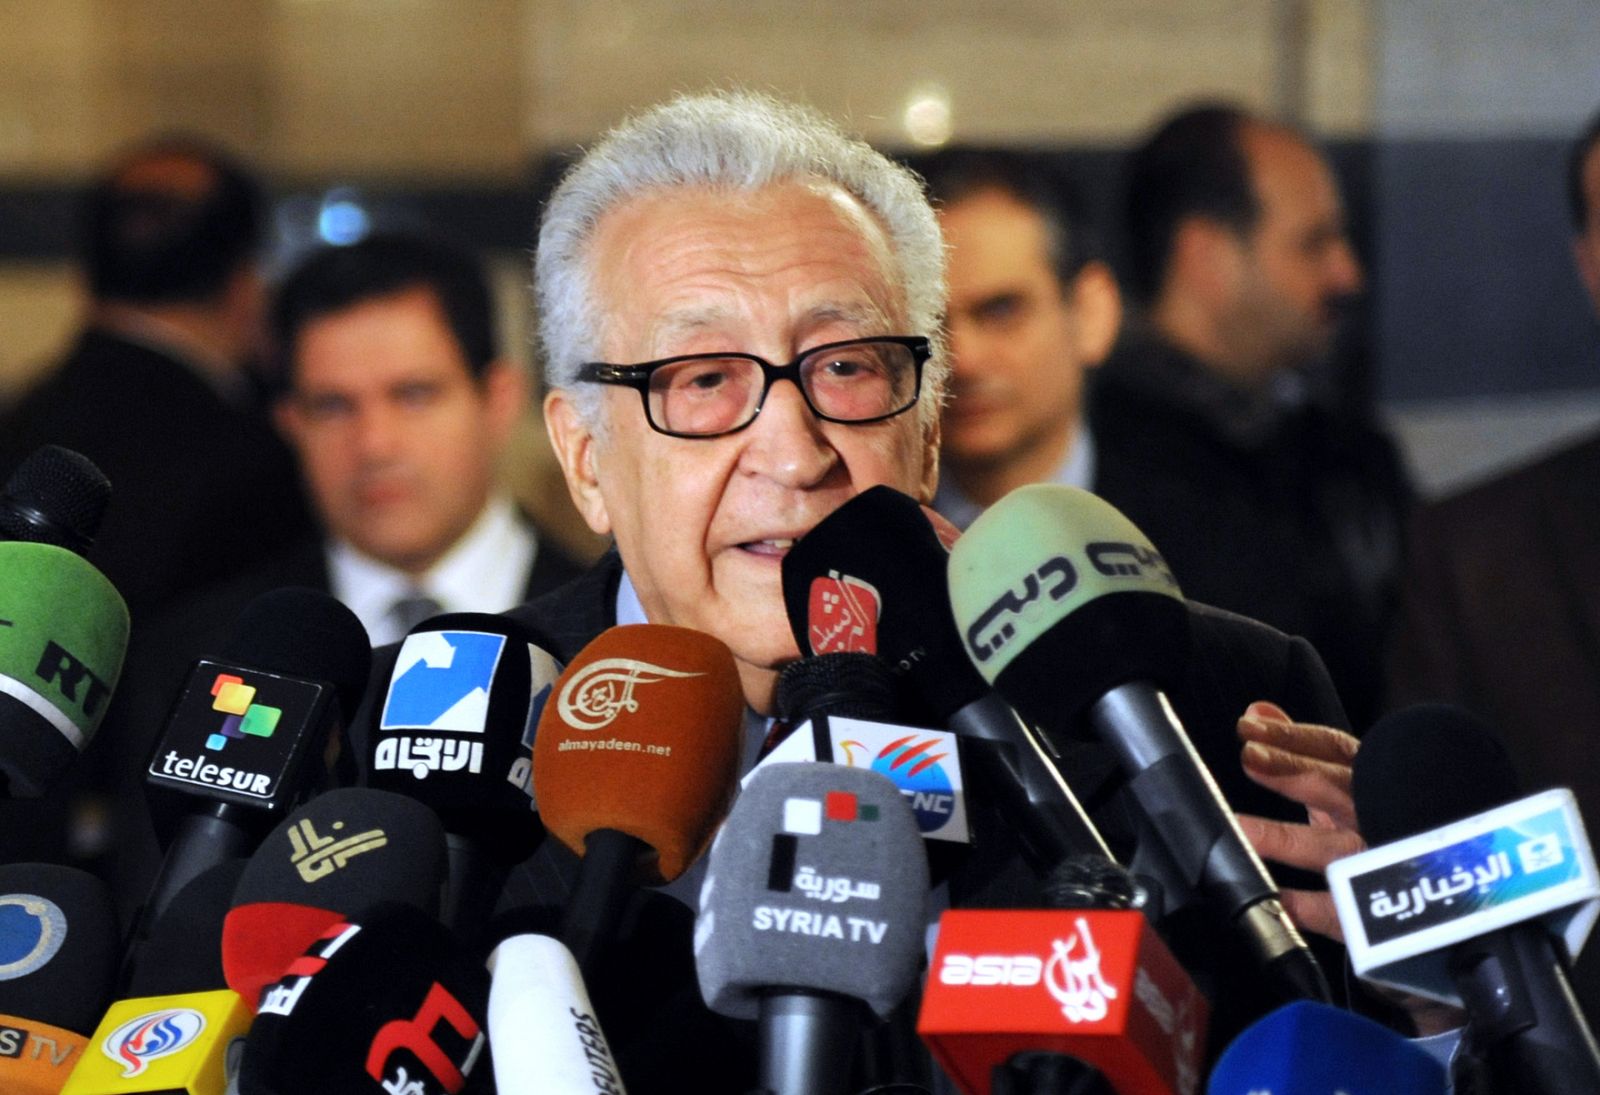 El enviado internacional para Siria, Lajdar Brahimi, durante la rueda de prensa en Damasco